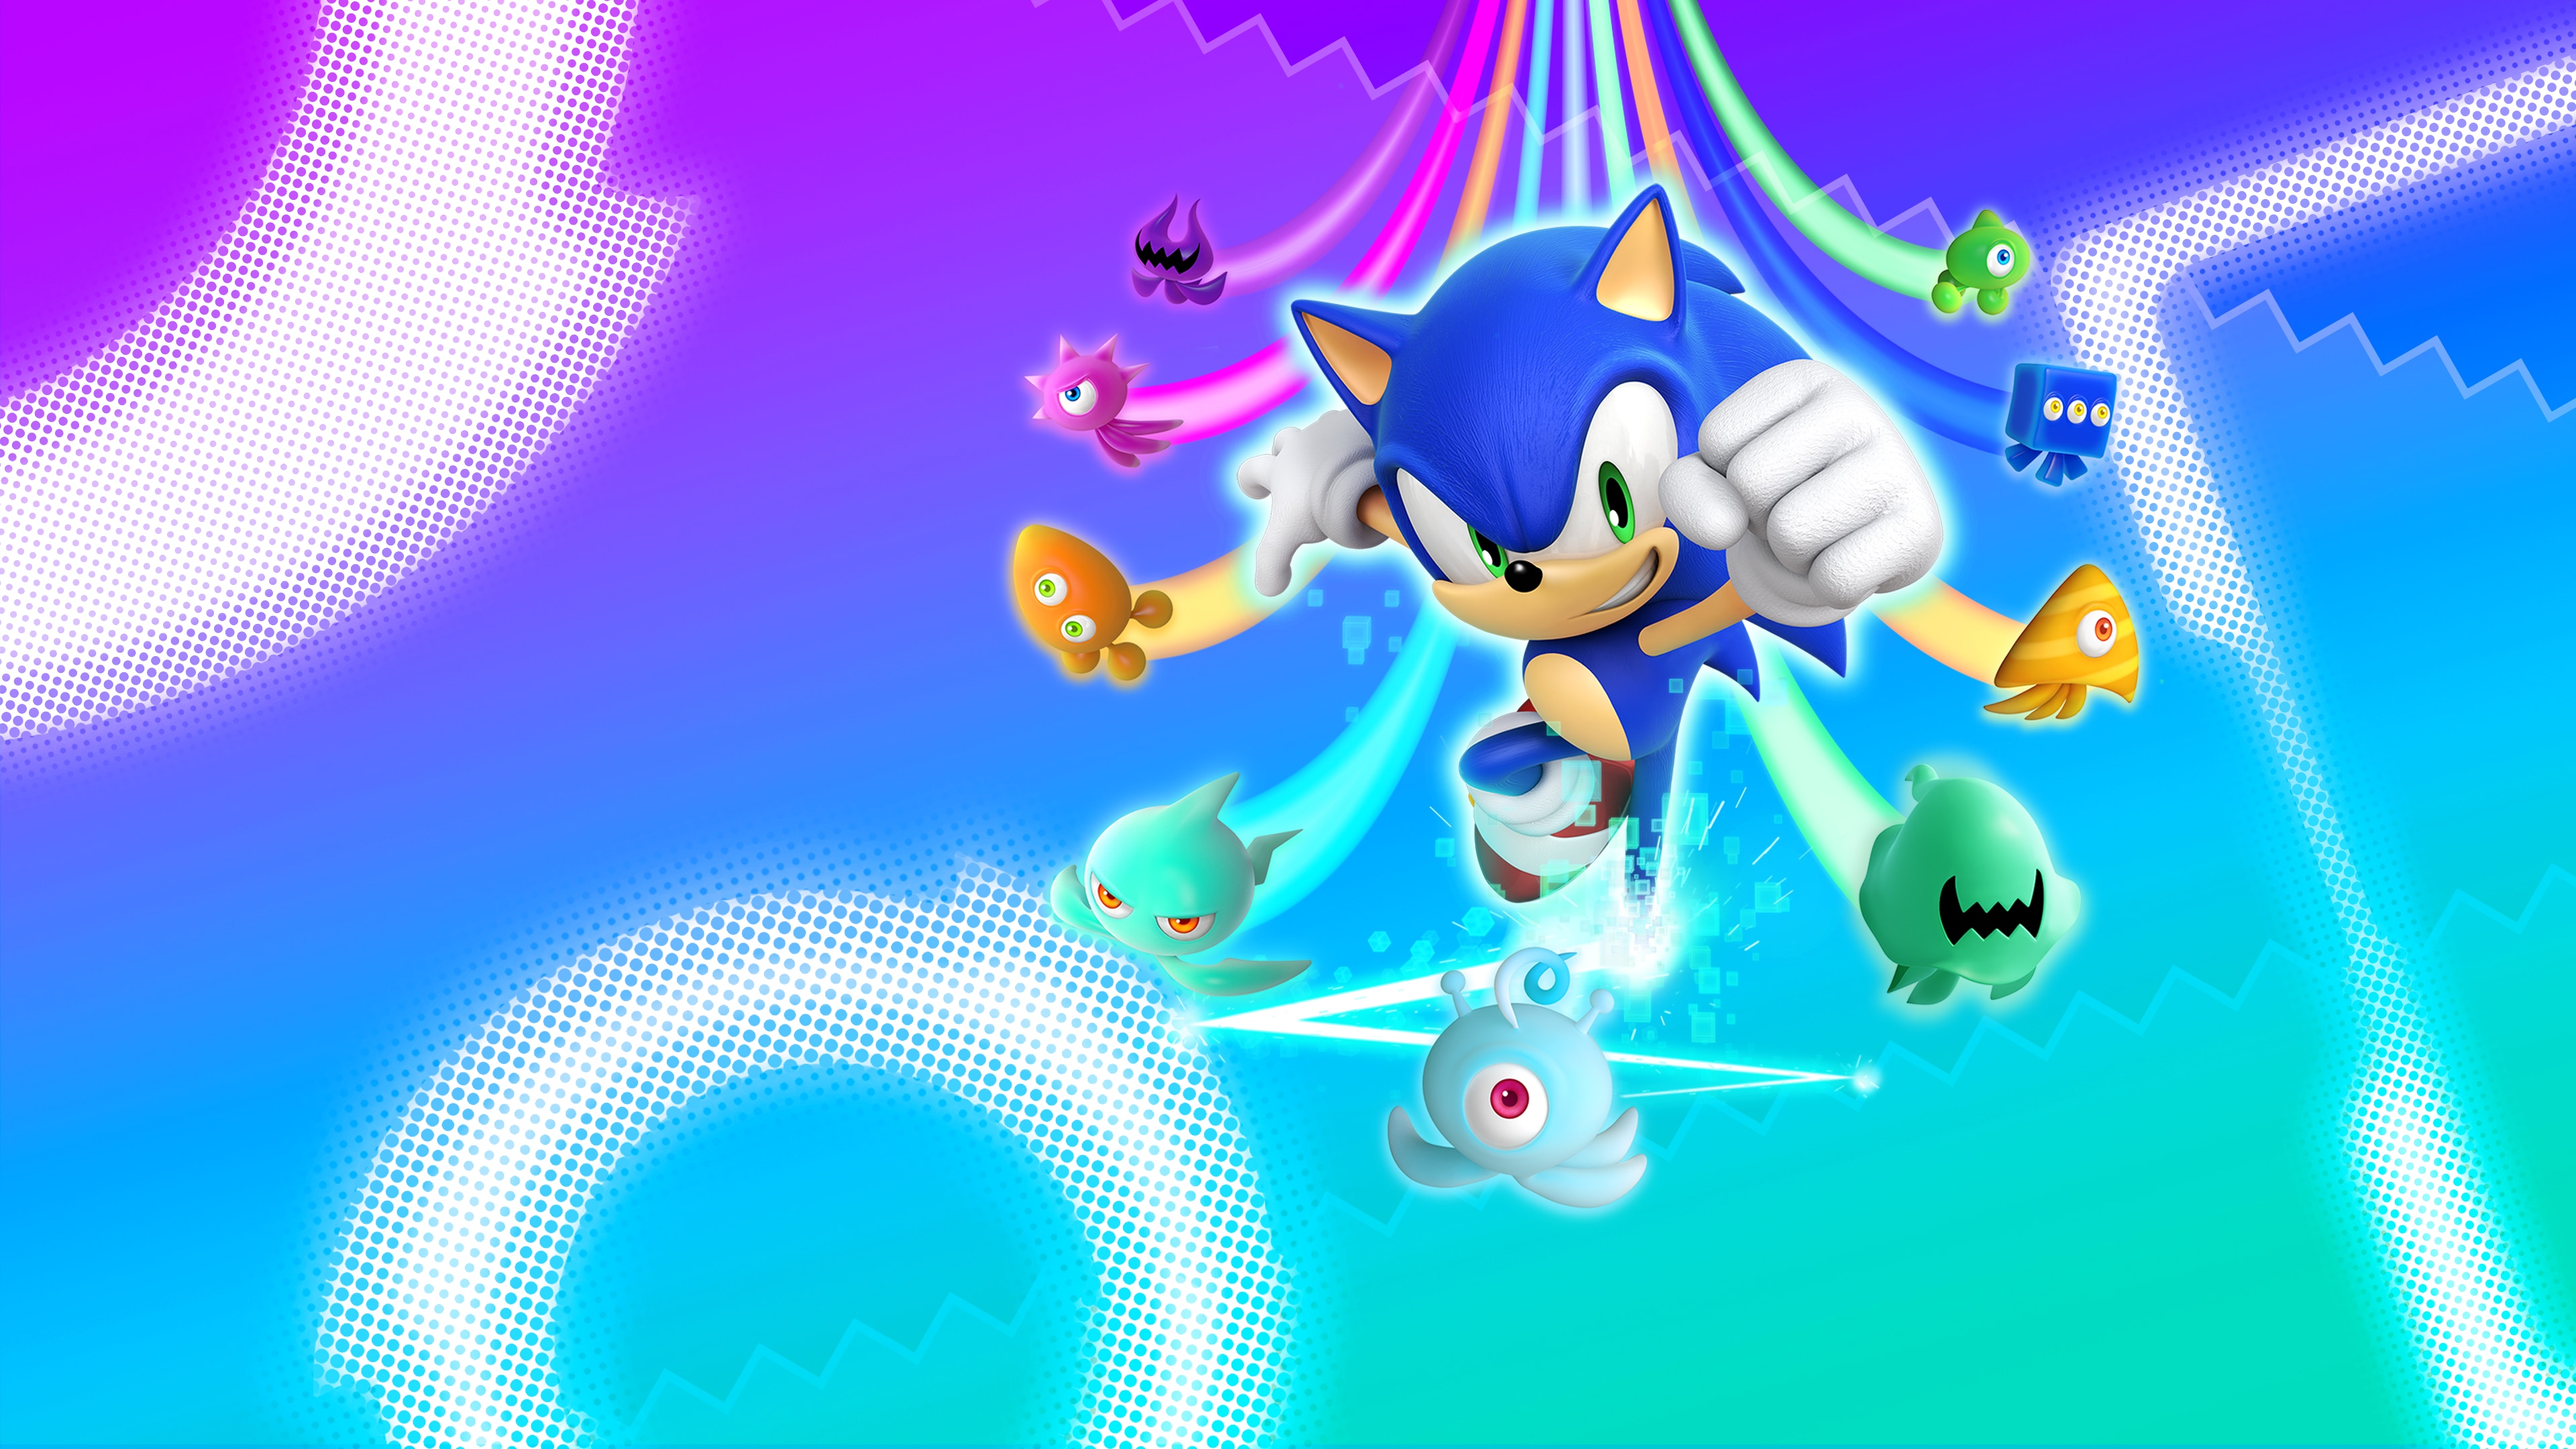 Meilleurs fonds d'écran Sonic Colors: Ultimate pour l'écran du téléphone